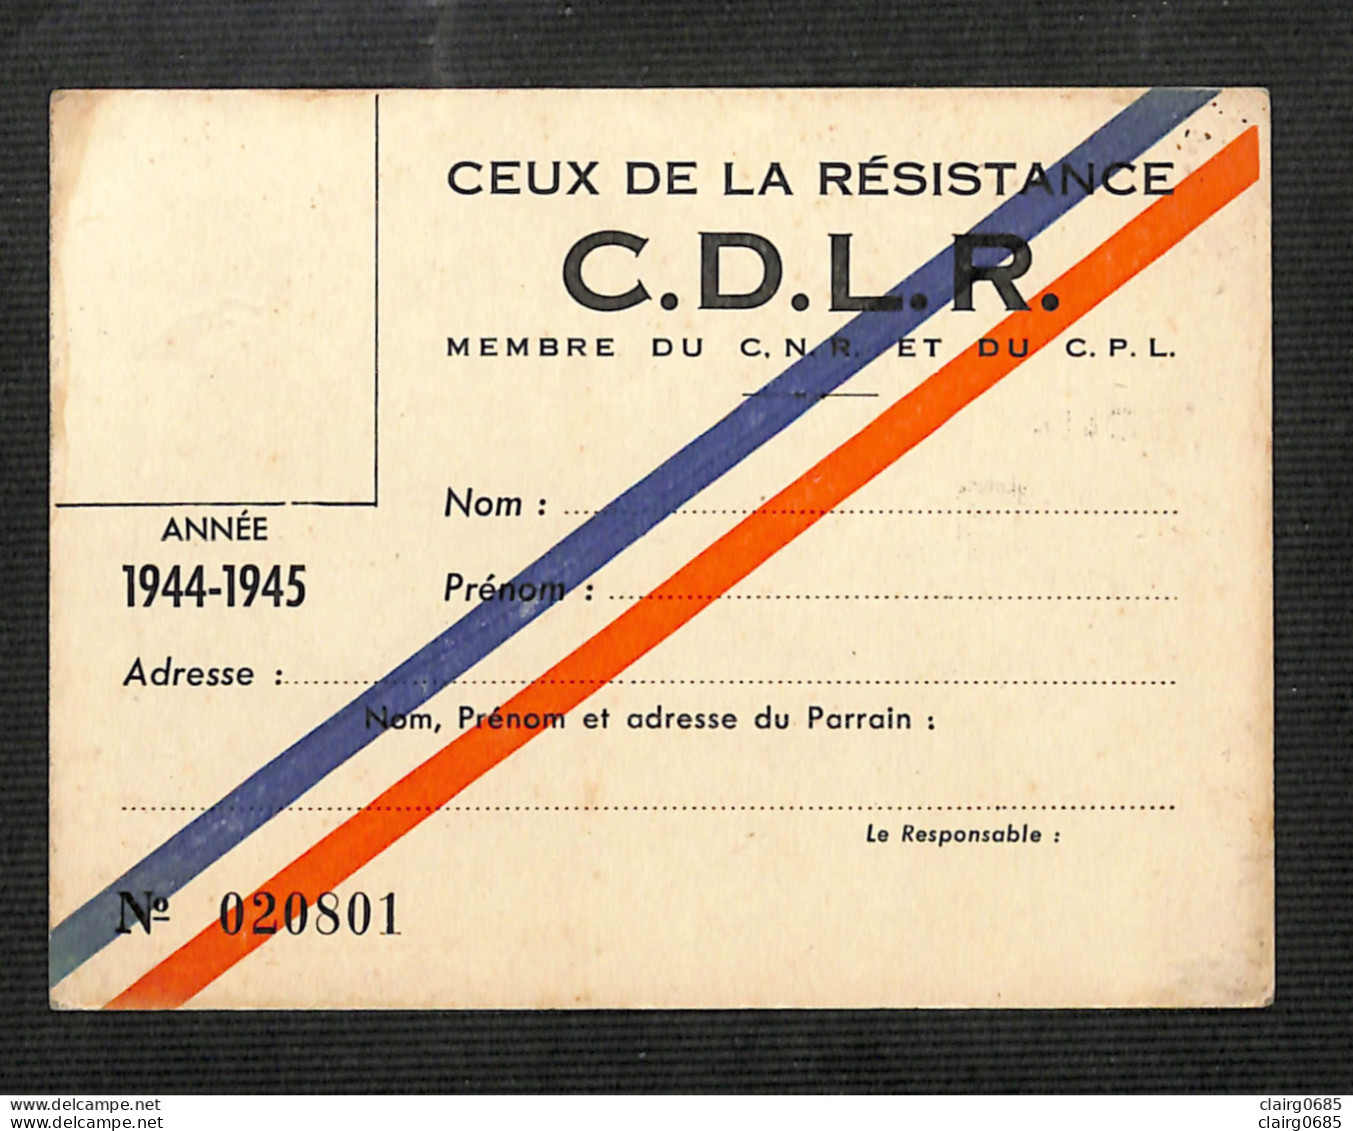 MILITARIA - CEUX DE LA RESISTANCE - C.D.L.R. - Carte De Membre Vierge  Du C. N. R. Et Du C. P. L. - 1944-1945 - Documents